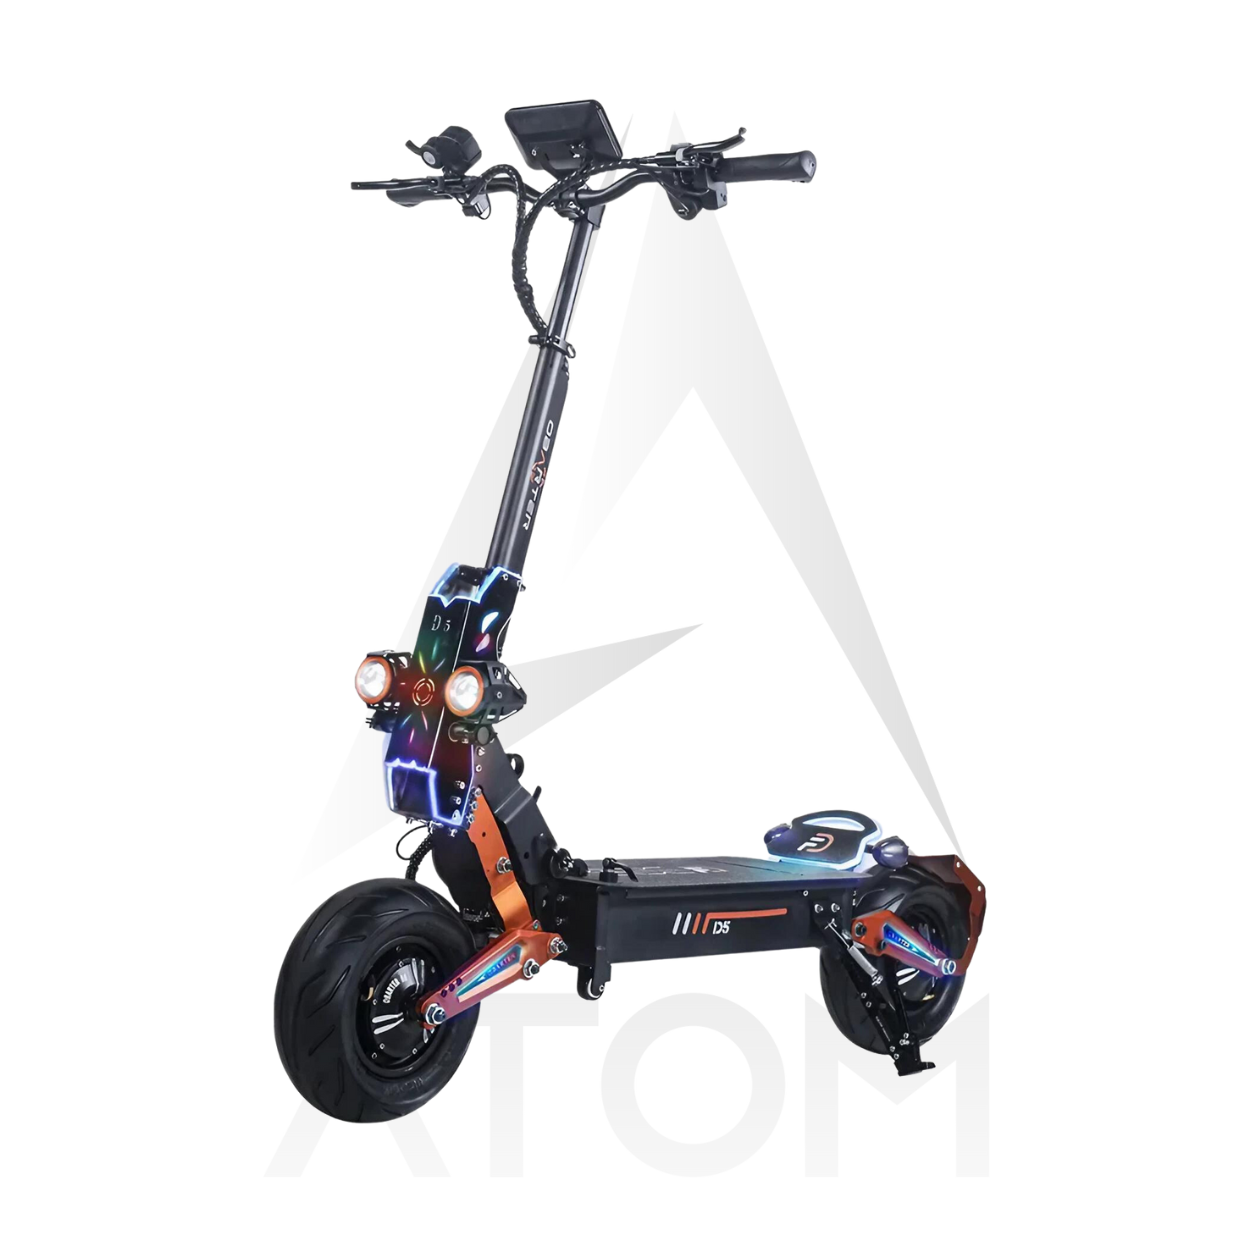 Trottinette électrique | Atom Rush NLD5 | Dual 2x2500 W | OBARTER | V-max 25 km/h | Autonomie 120 km - Atom Motors